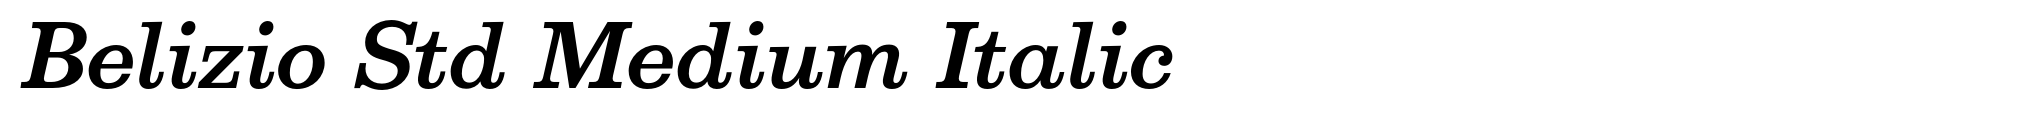 Belizio Std Medium Italic image